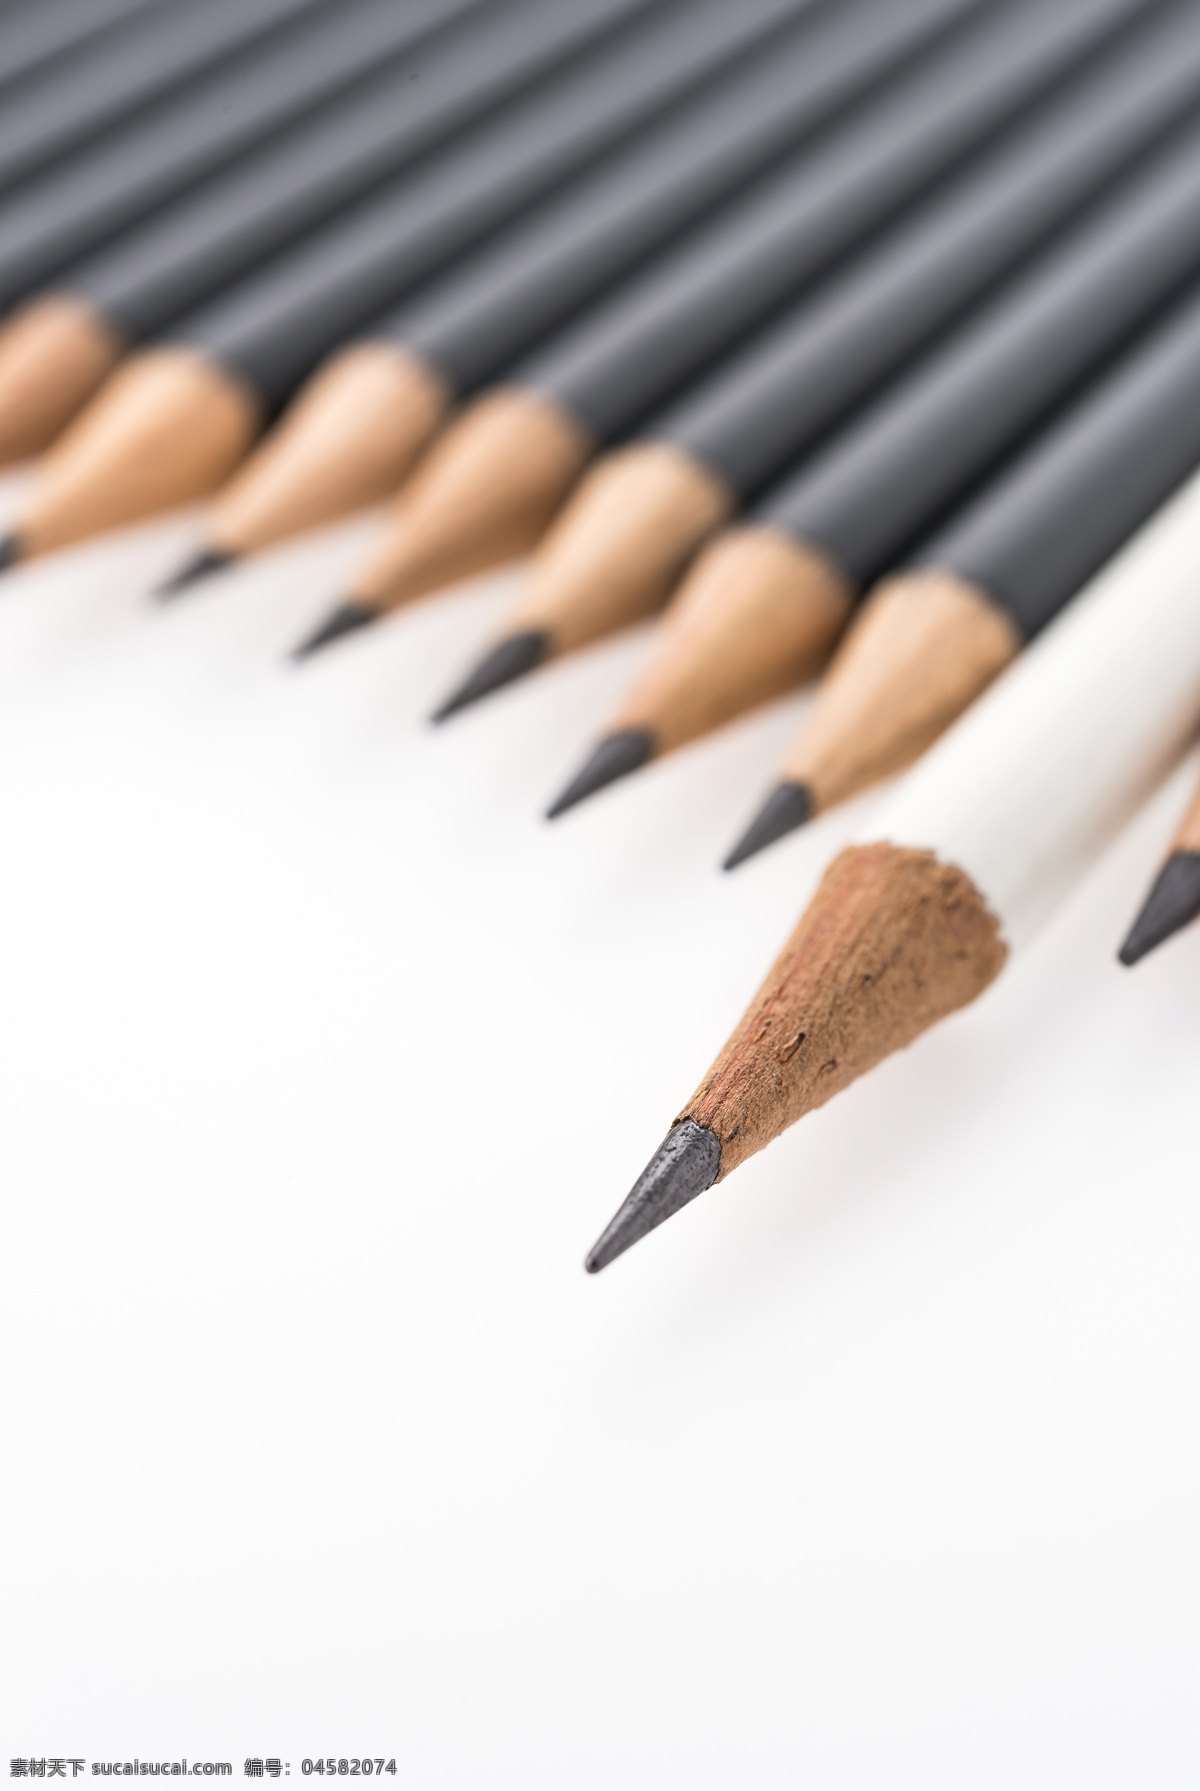 黑色 铅笔 上 白色 笔 绘画笔 彩色铅笔 文具 学习用品 办公学习 生活百科